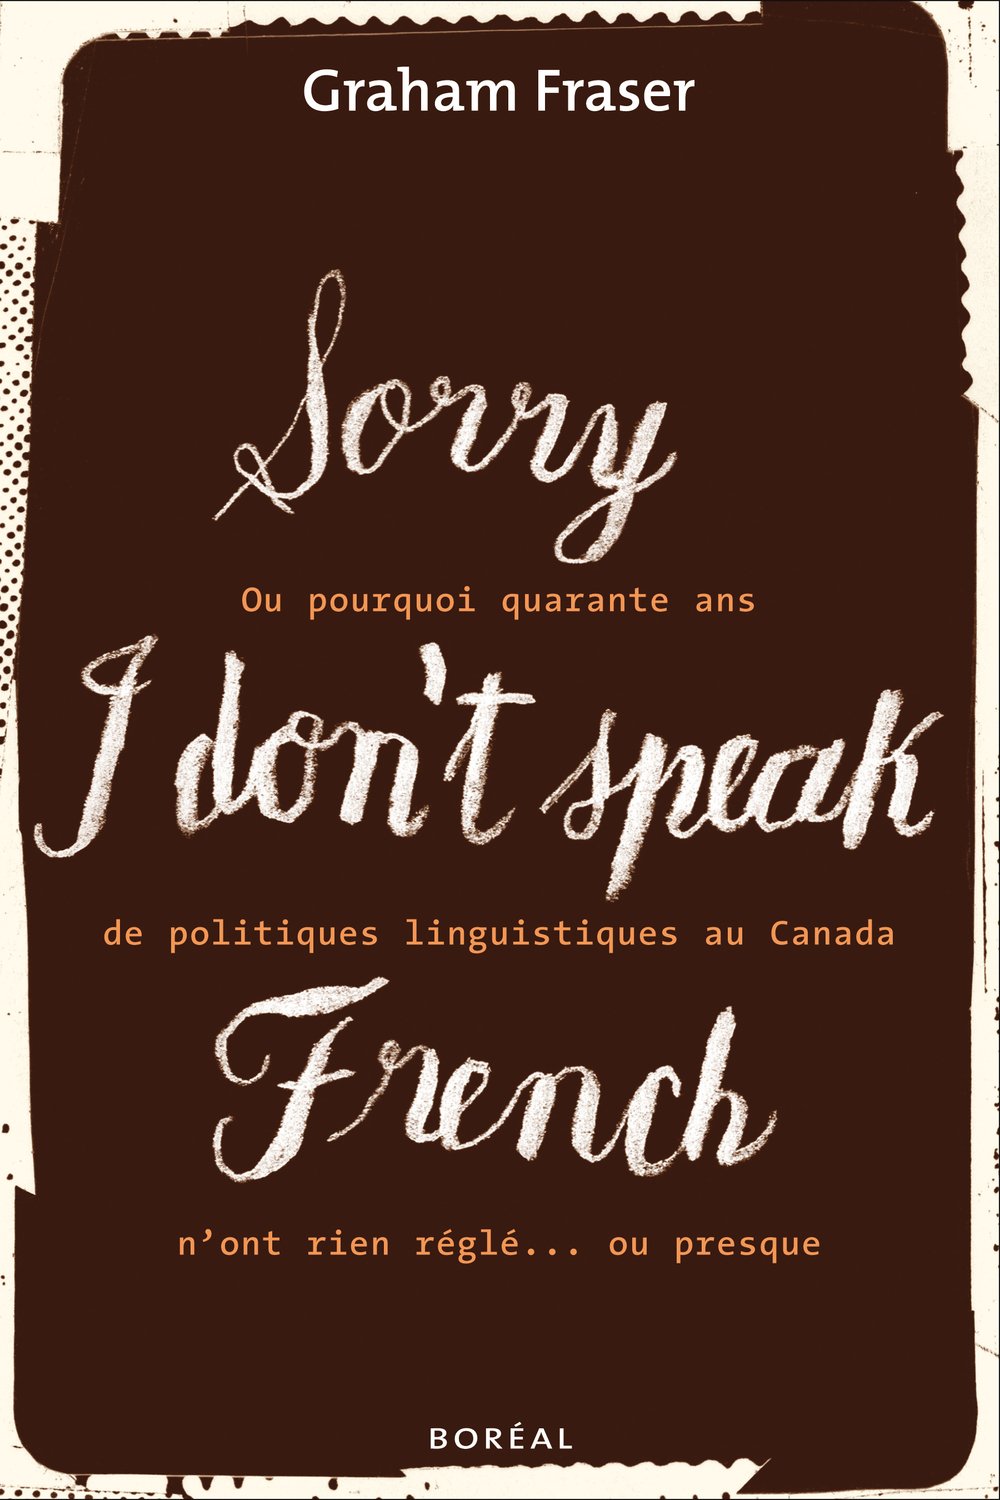 Livre ISBN 2764605072 Sorry, I Don't Speak French ou pourquoi quarante ans de politiques linguistiques au Canada n'ont rien réglé… ou presque (Graham Fraser)